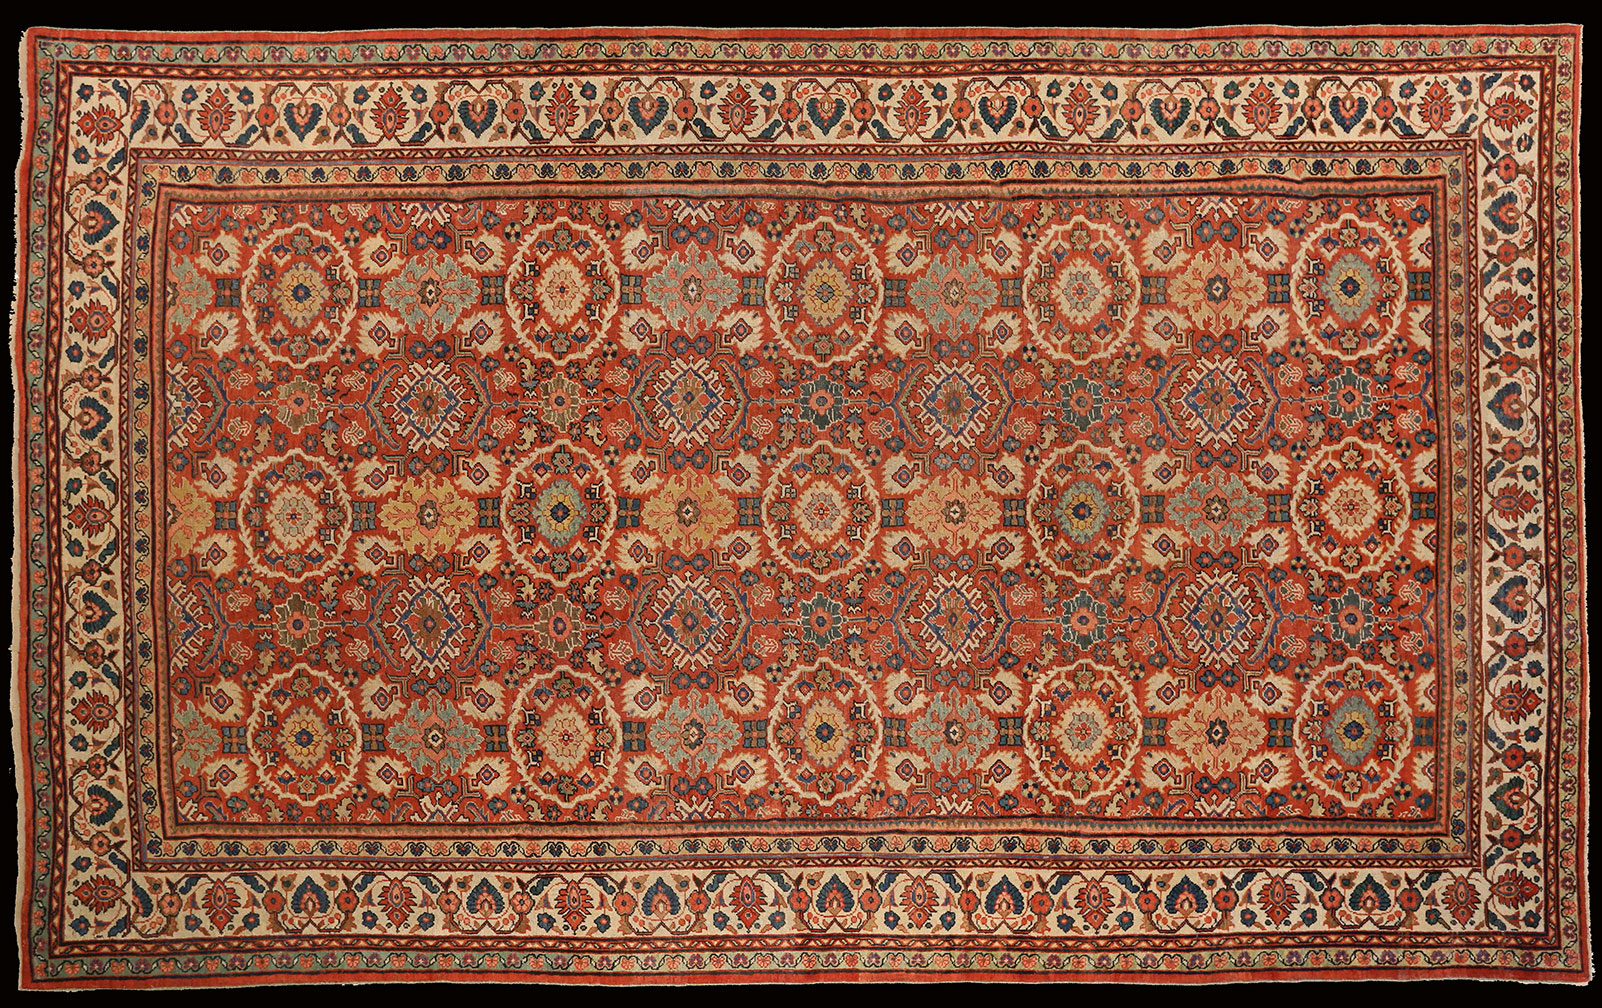 Antique sultan abad Carpet - # 52107